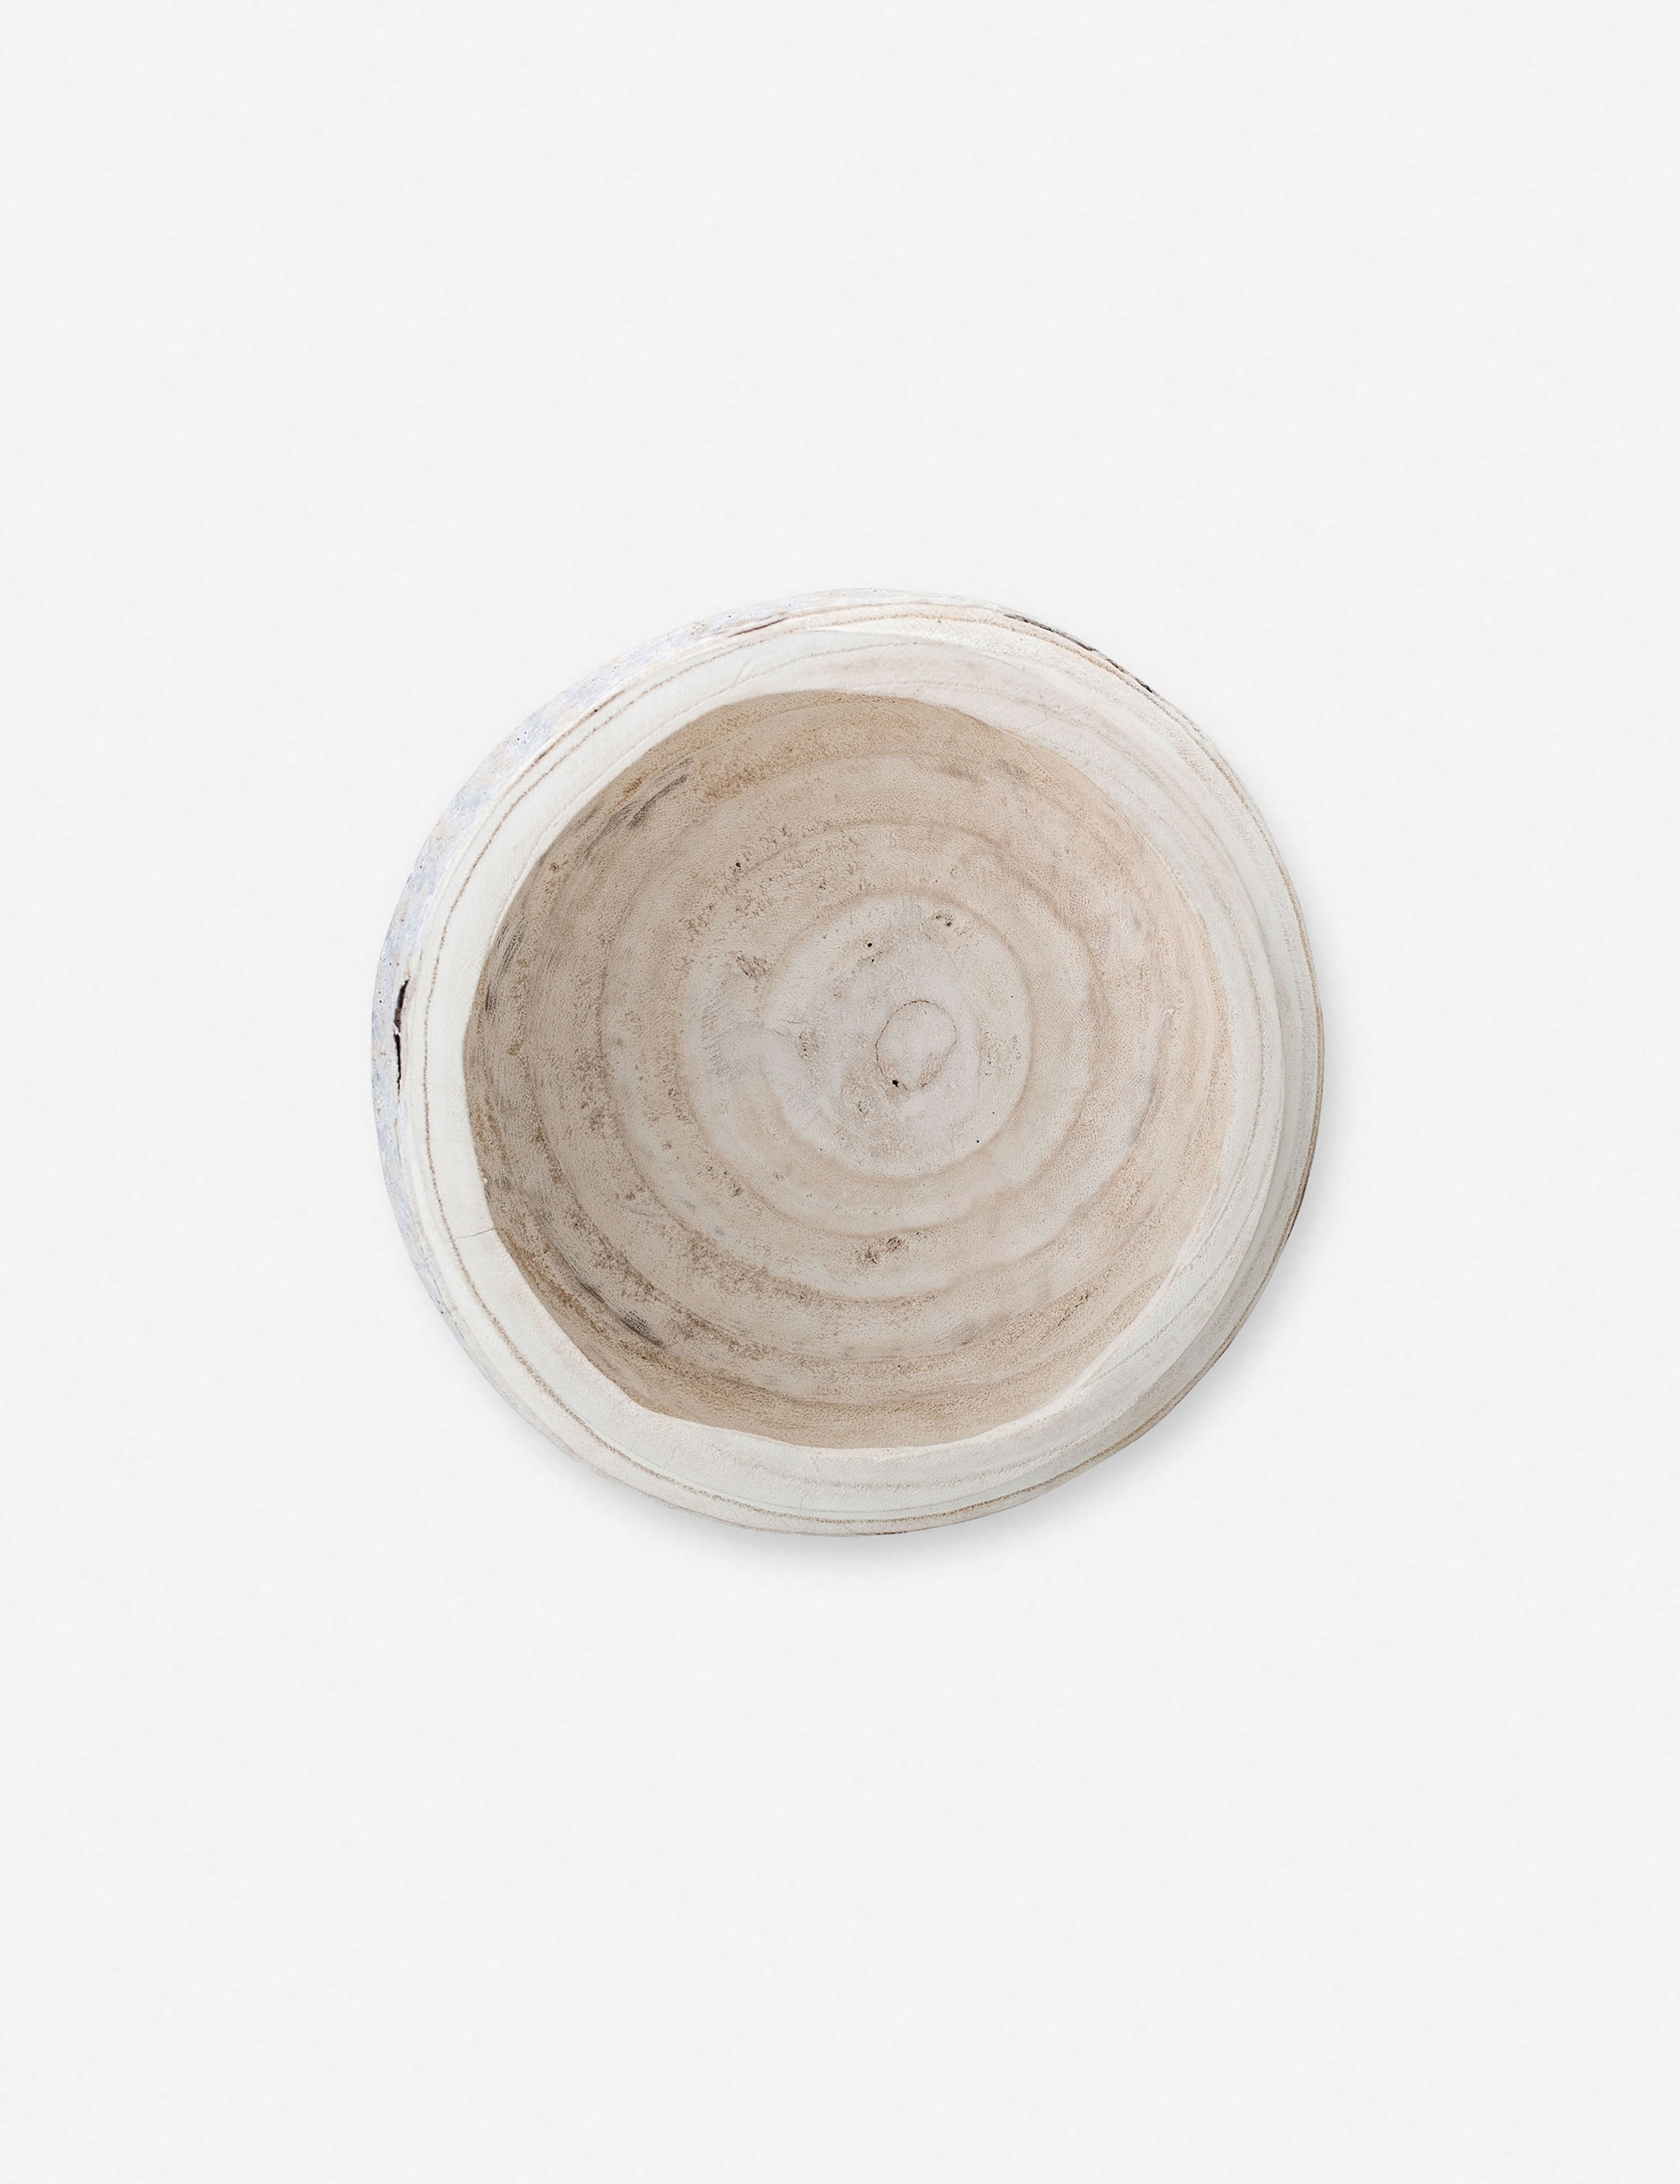 Minne Decorative Bowl, Whitewashed - Image 1